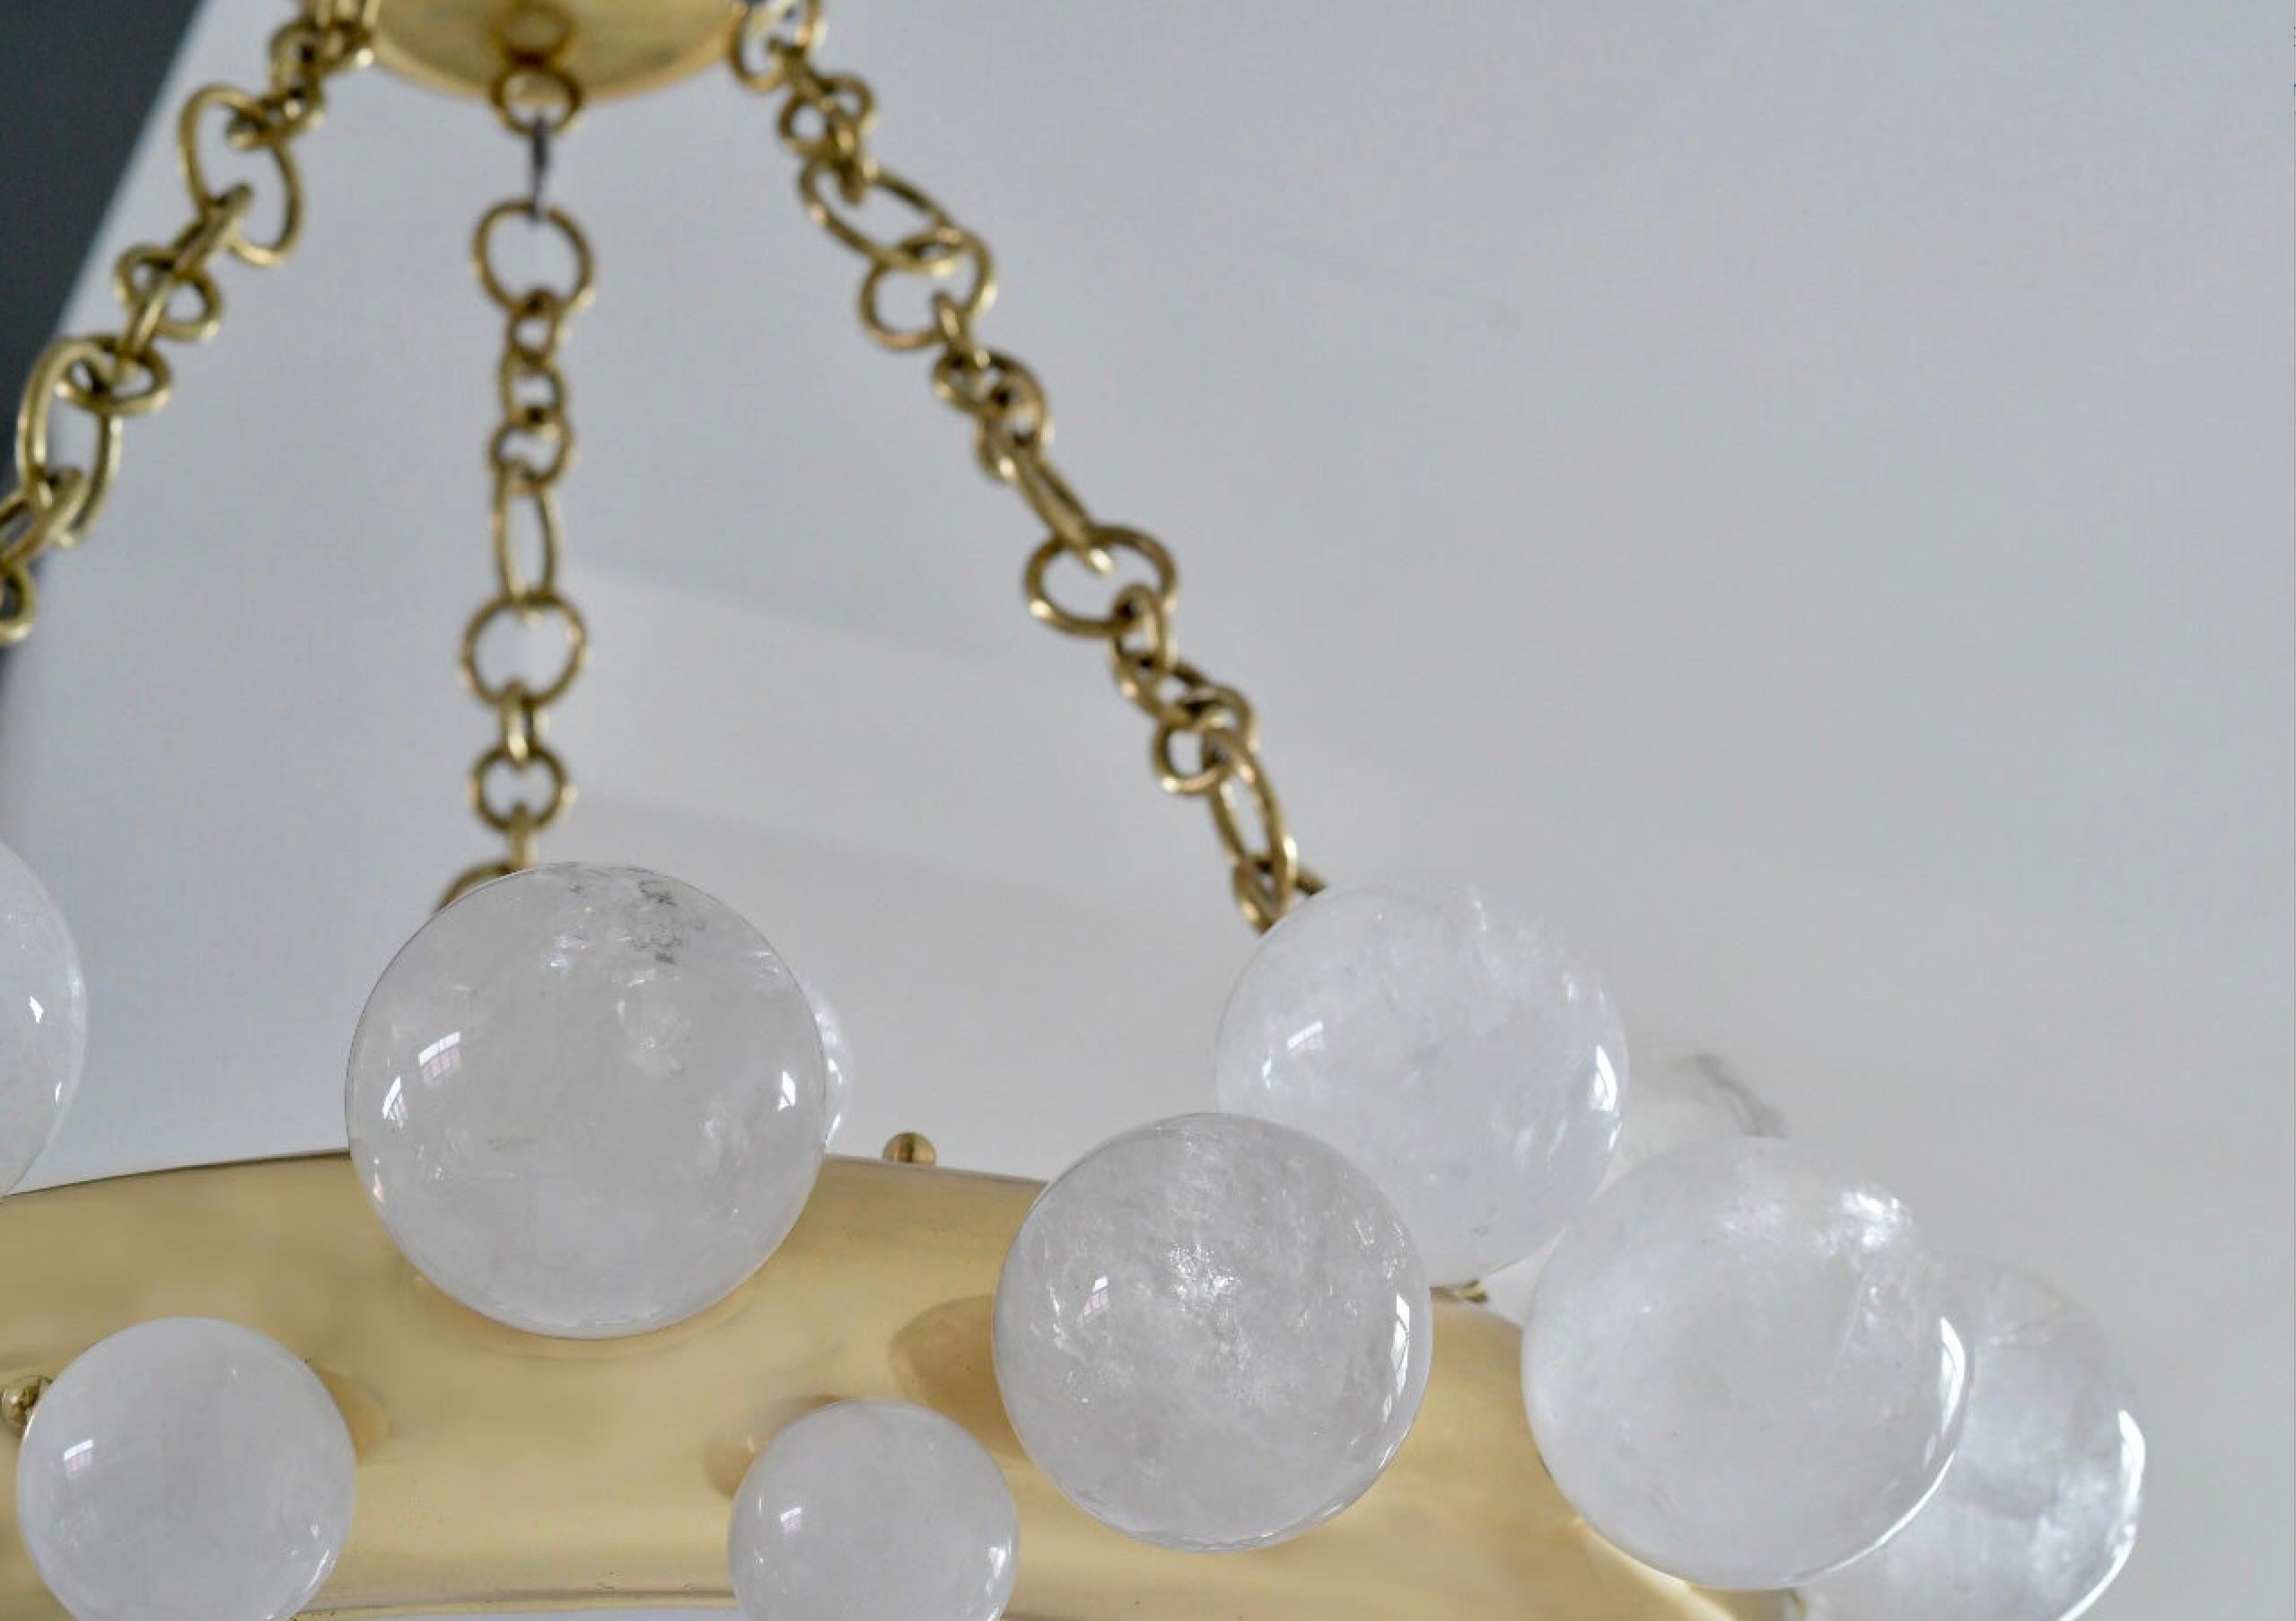 Une paire de lustres en cristal de roche à anneau de bulle avec une structure en laiton poli. Créé par Phoenix Gallery, NYC.
Chaque lustre installe 10 douilles. Utilisez des ampoules LED chaudes de 60w. Total de 600w. 
Taille et finition du métal